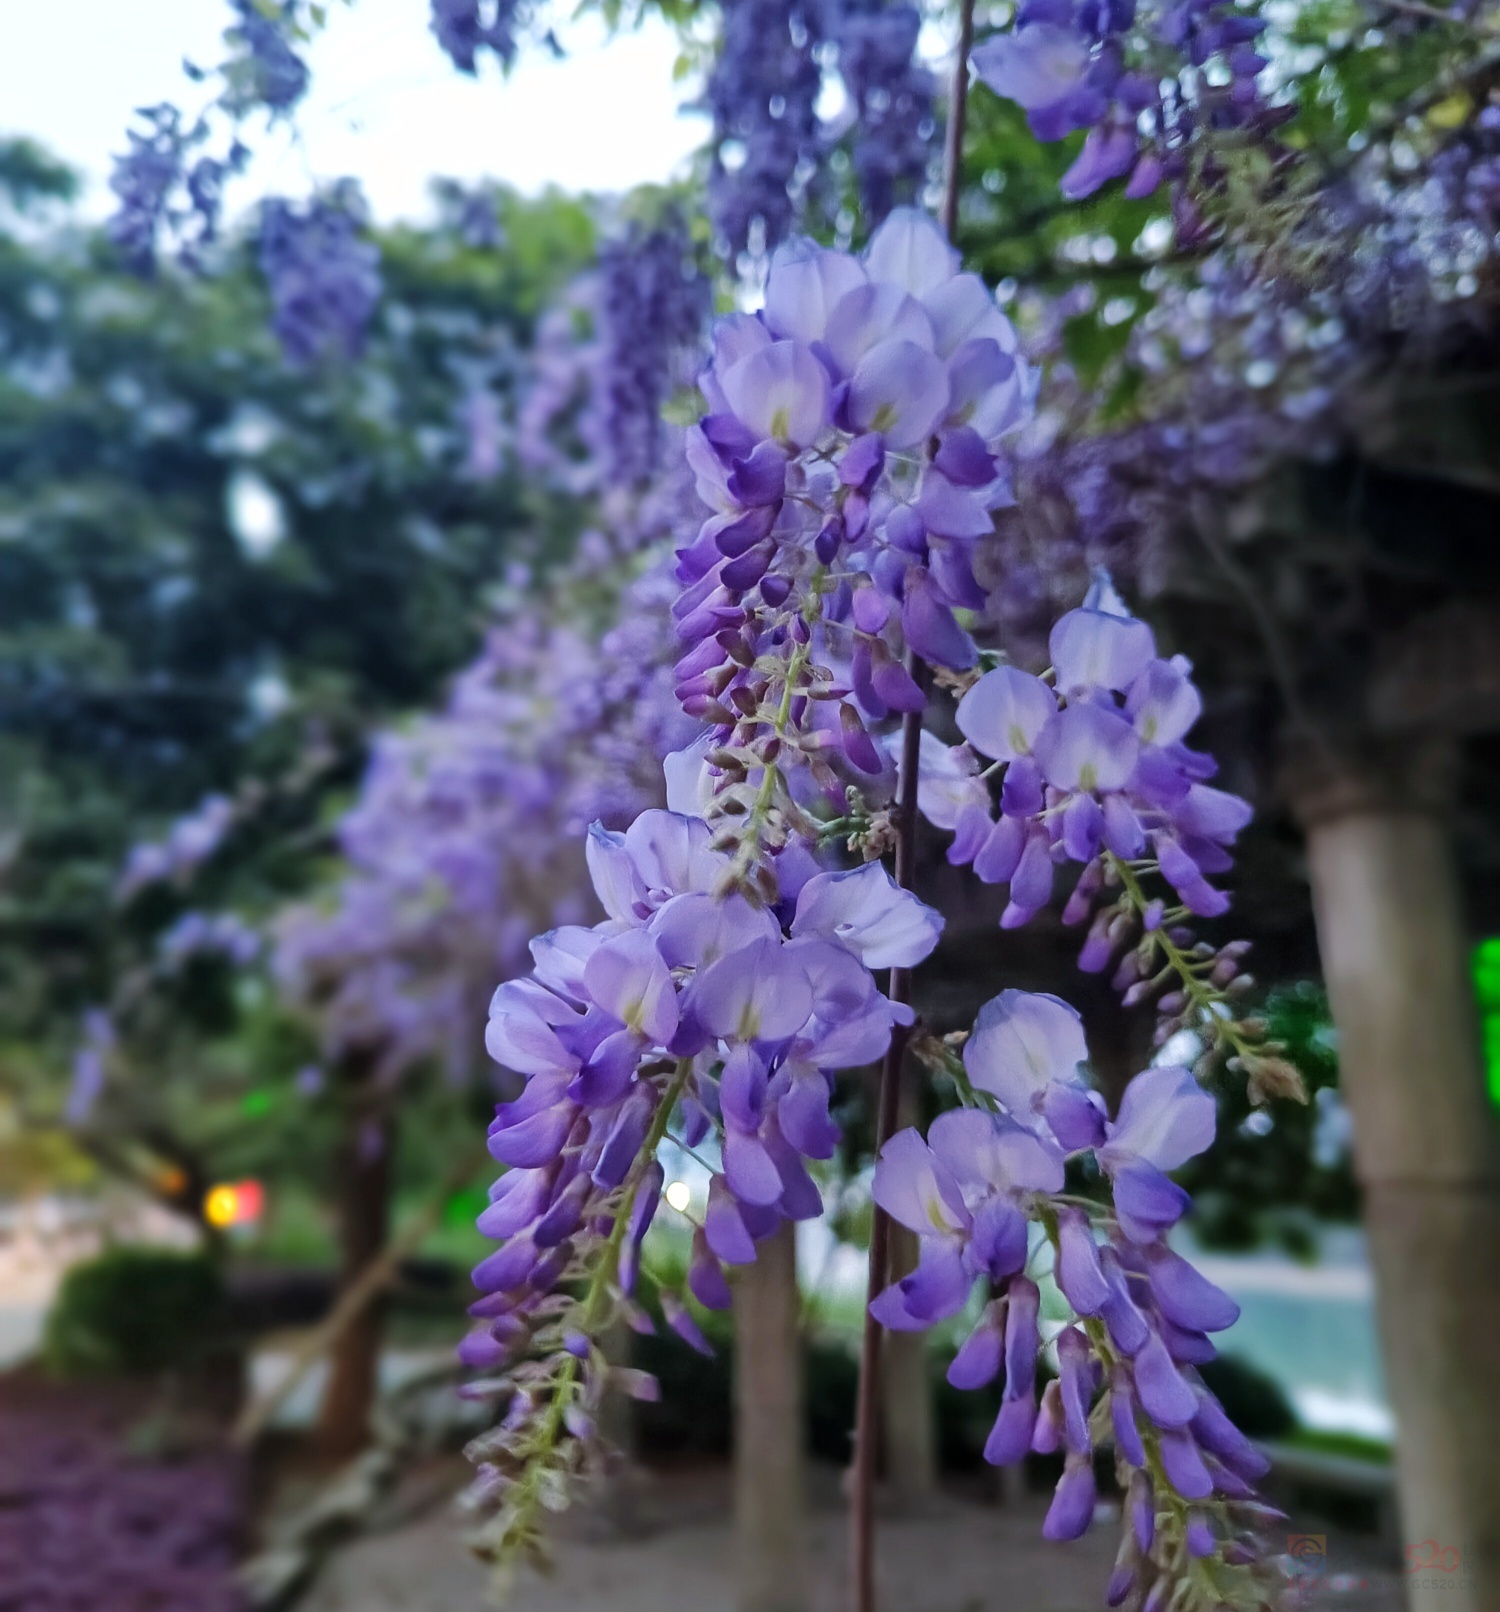 茶江河边的紫藤花盛开了。570 / 作者:风云客 / 帖子ID:305427